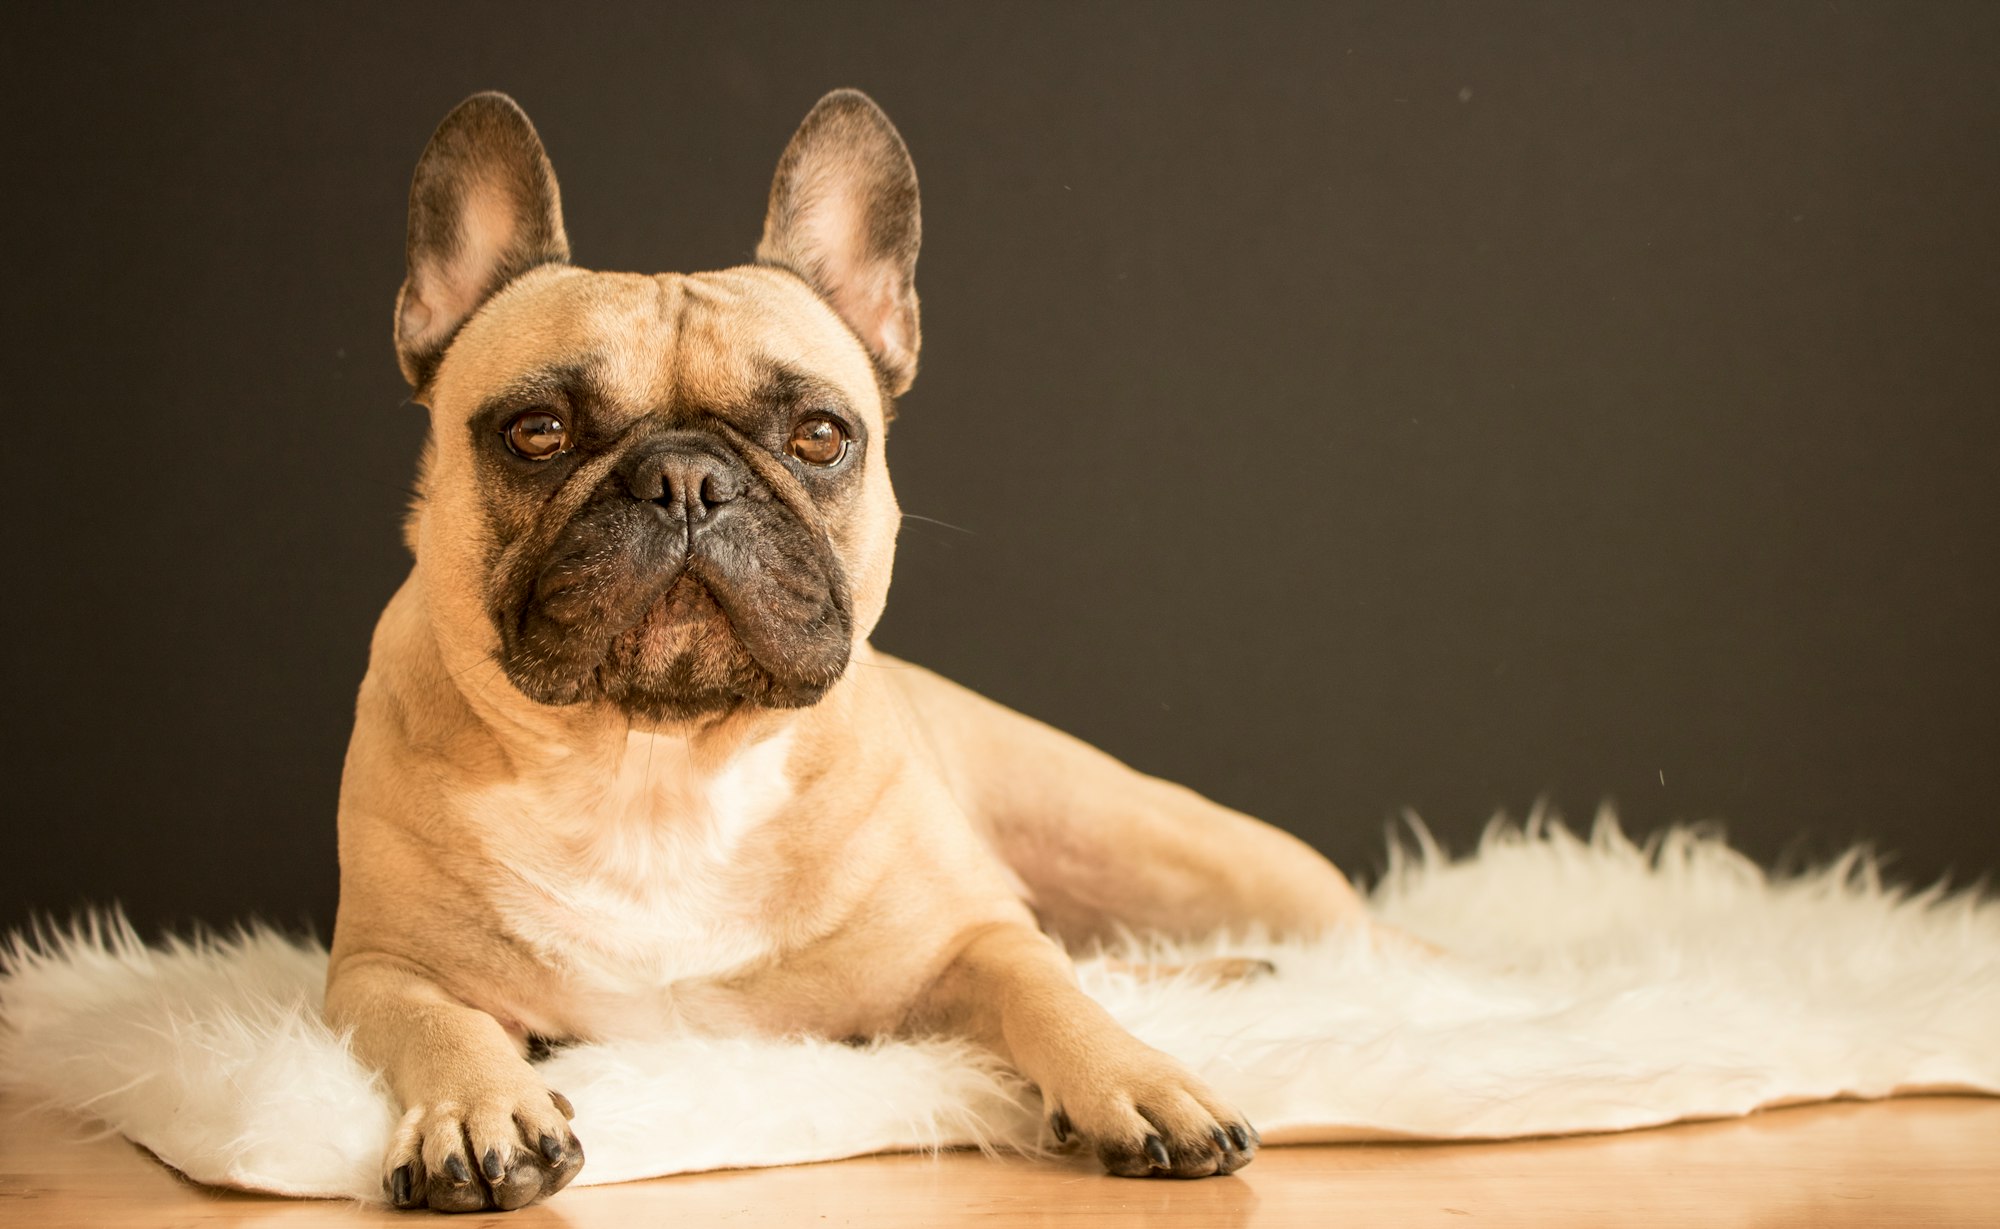 French Bulldog posing on a fur rug